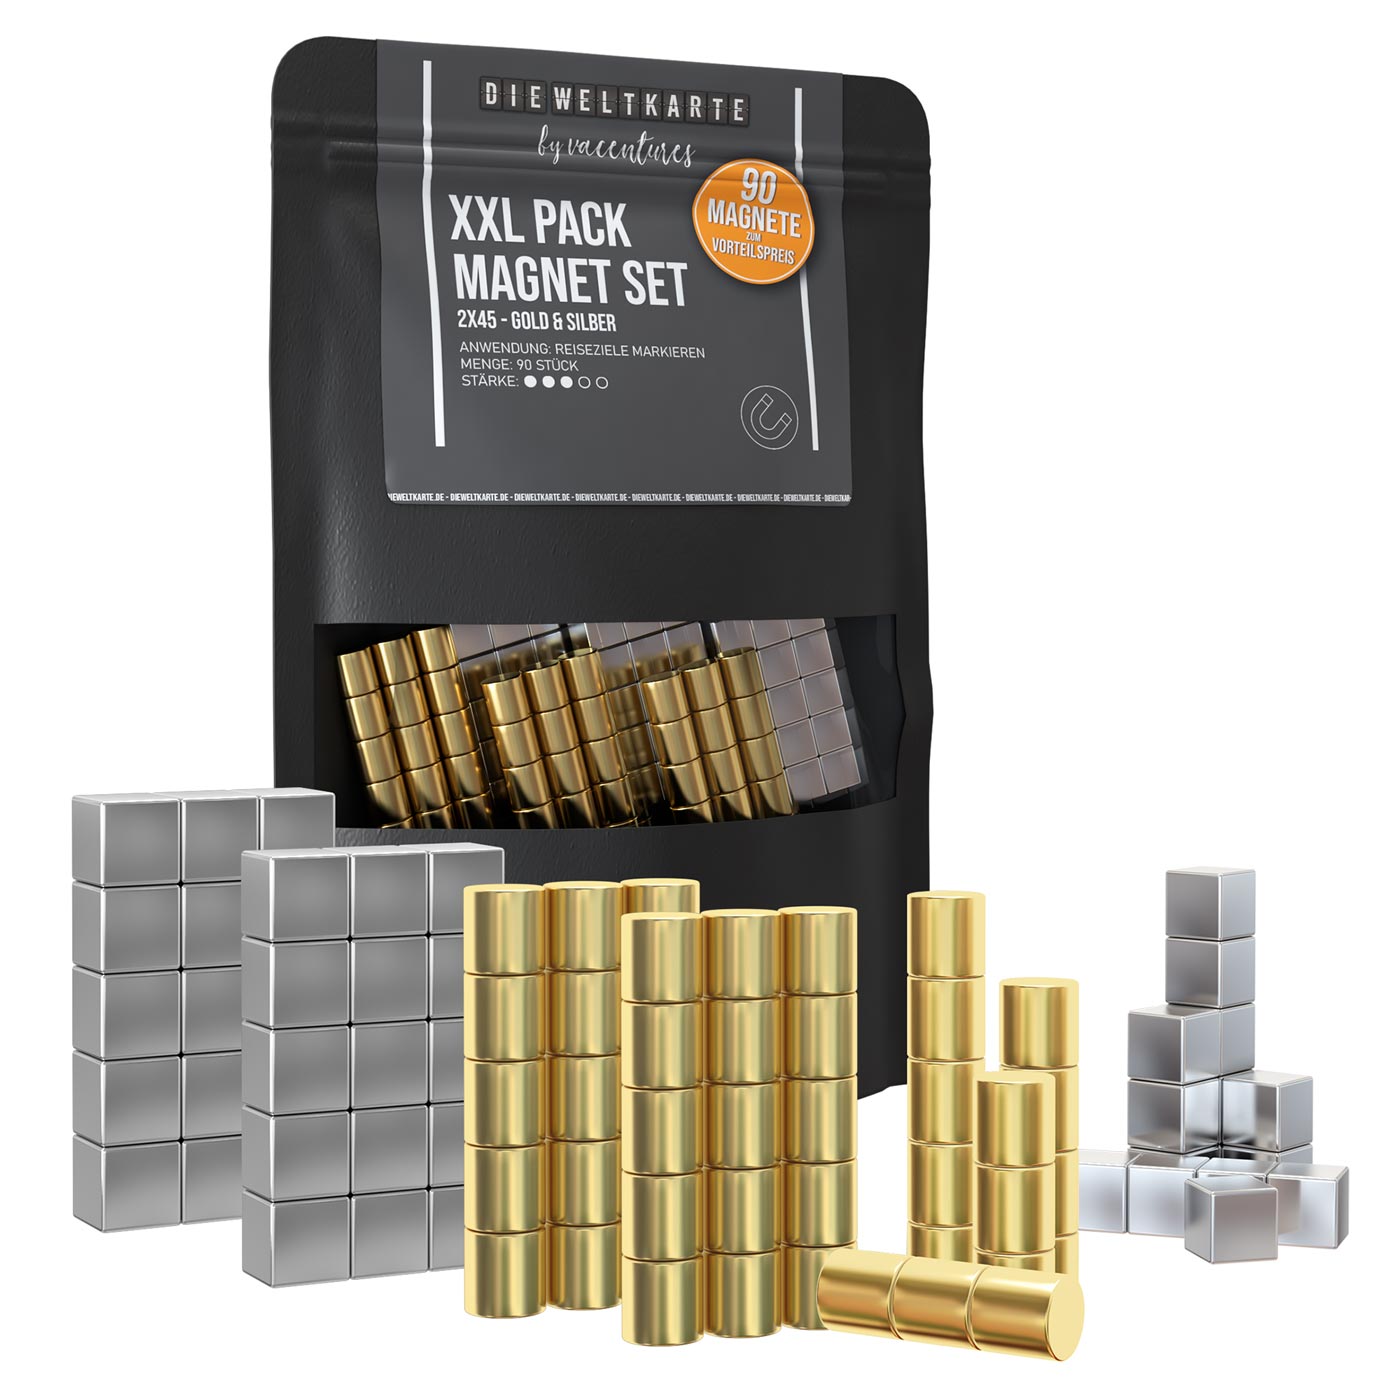 Magnet Set -  XXL Pack - Gold & Silber - 2x45